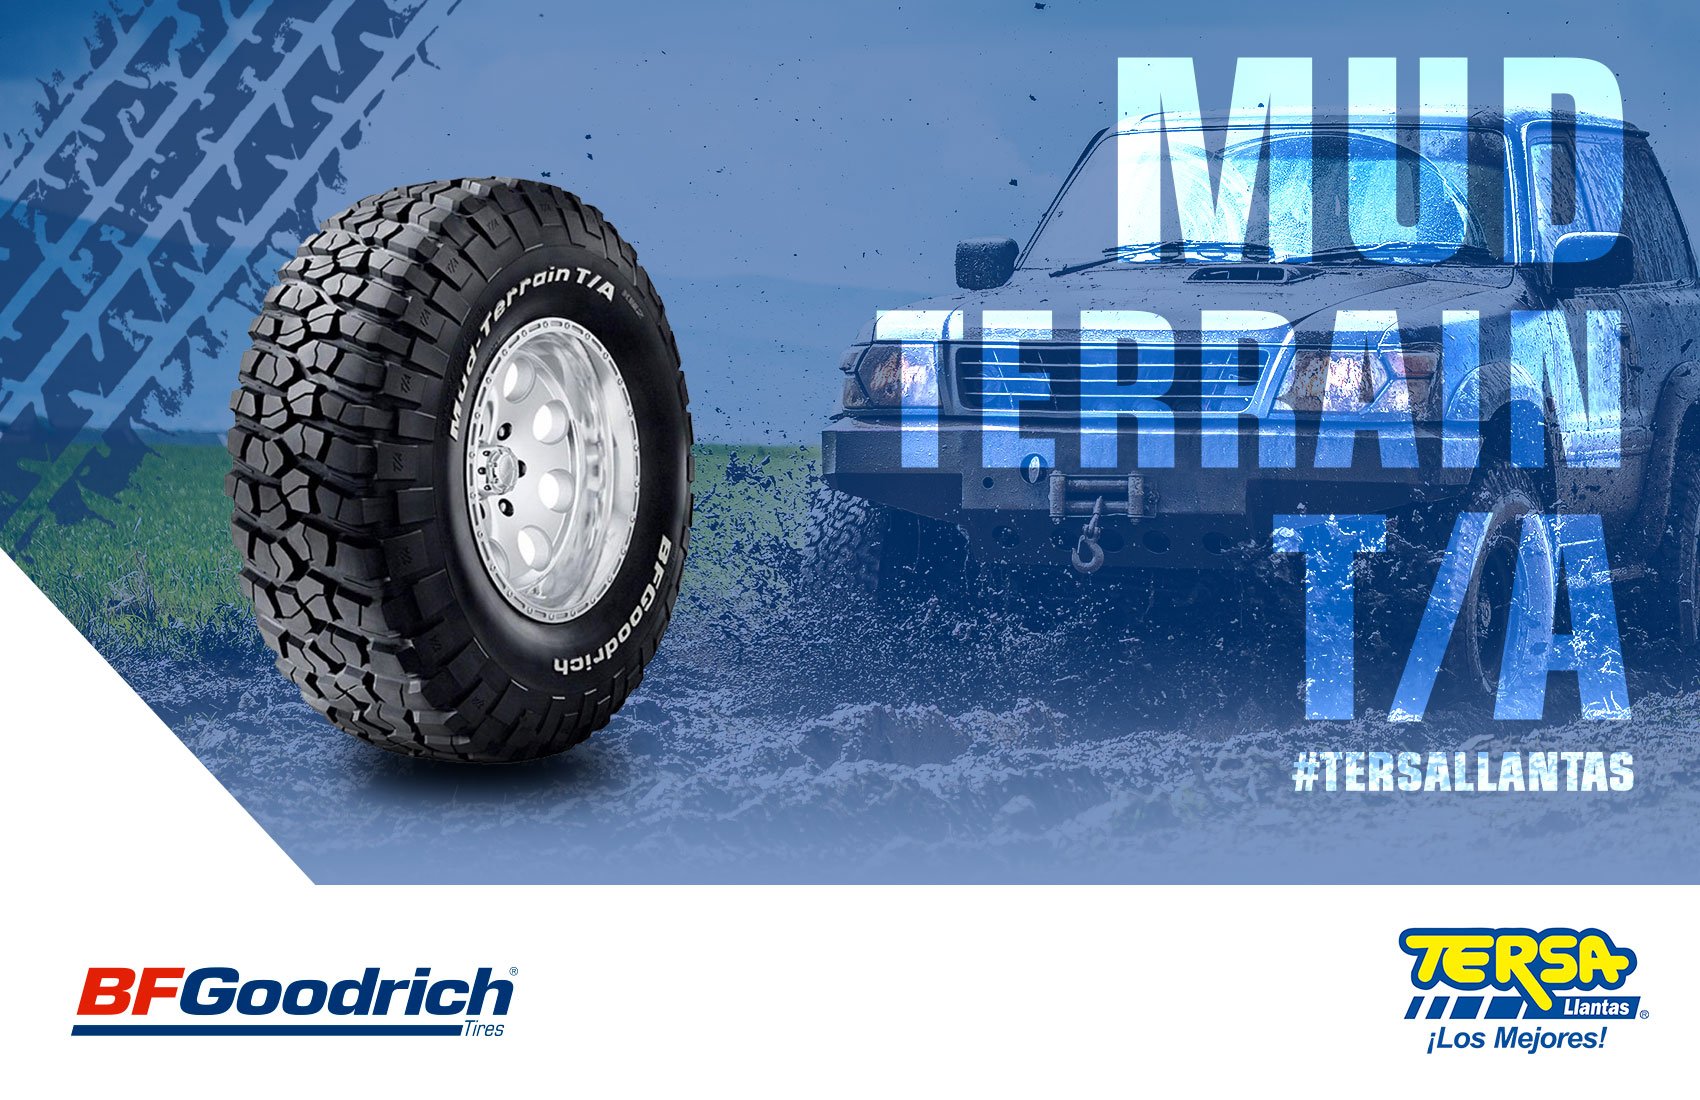 TERSA Llantas & Car on Twitter: "¡La próxima aventura comienza con Mud-Terrain T/A de BFGoodrich! La llanta que necesitas para lograr el máximo desempeño sobre superficies con lodo o arena. Solicita